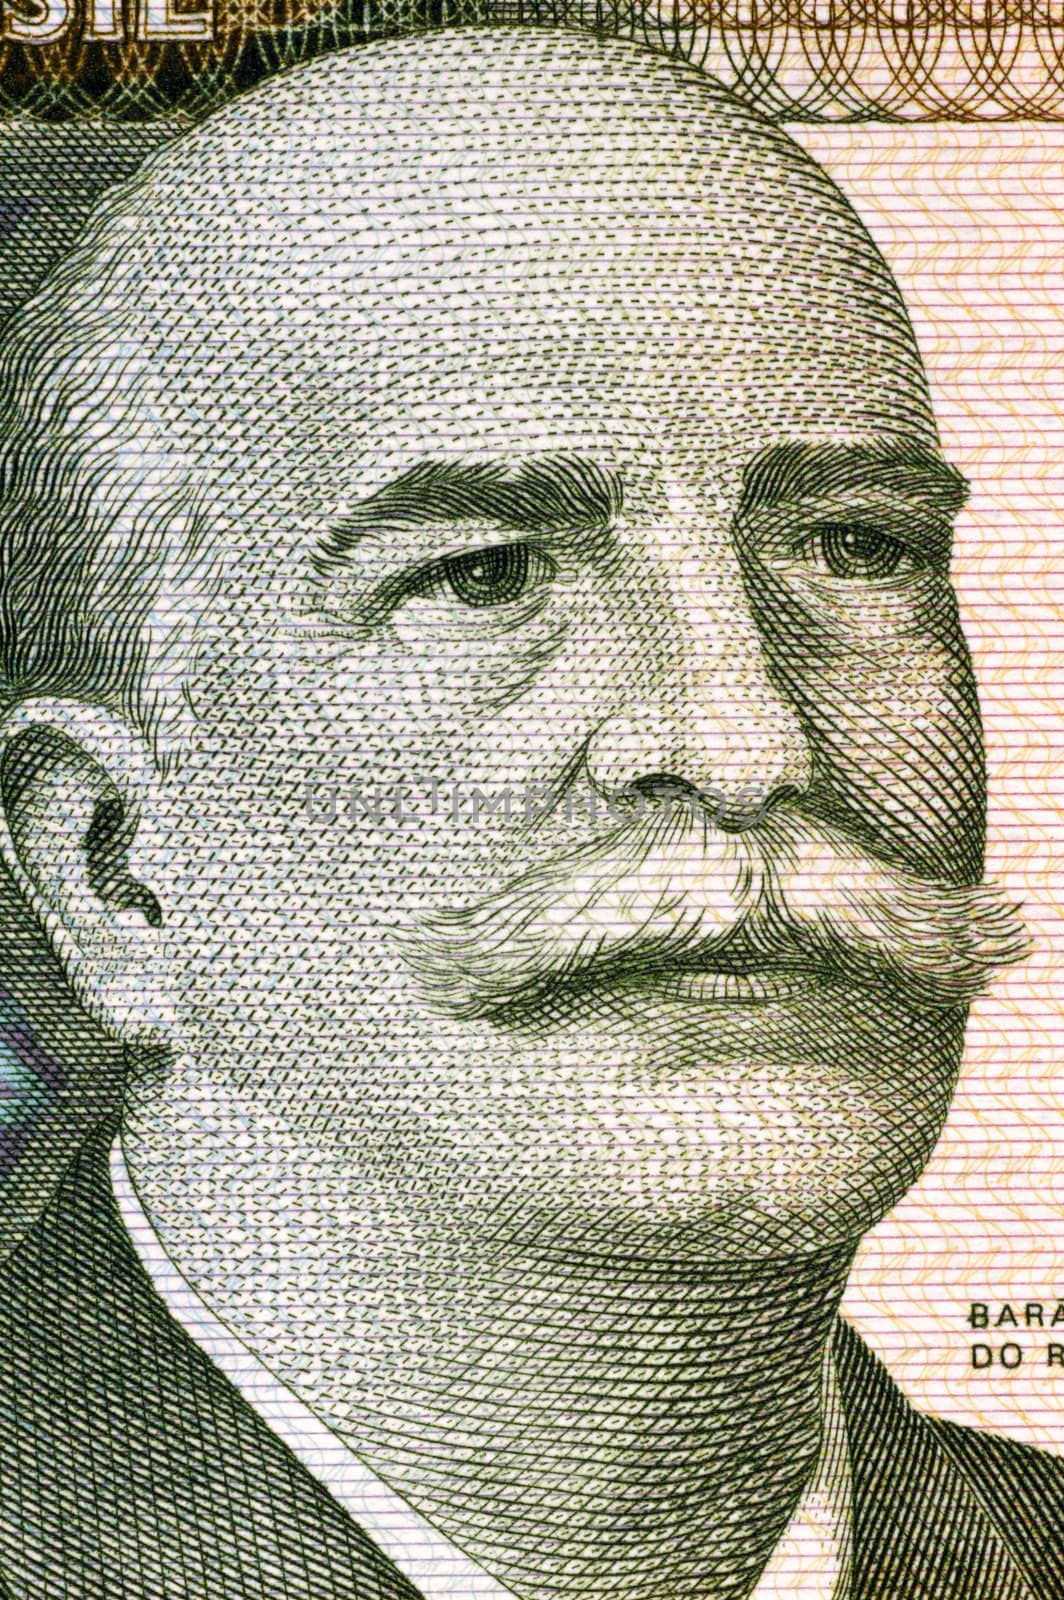 Jose Paranhos, Baron of Rio Branco by Georgios